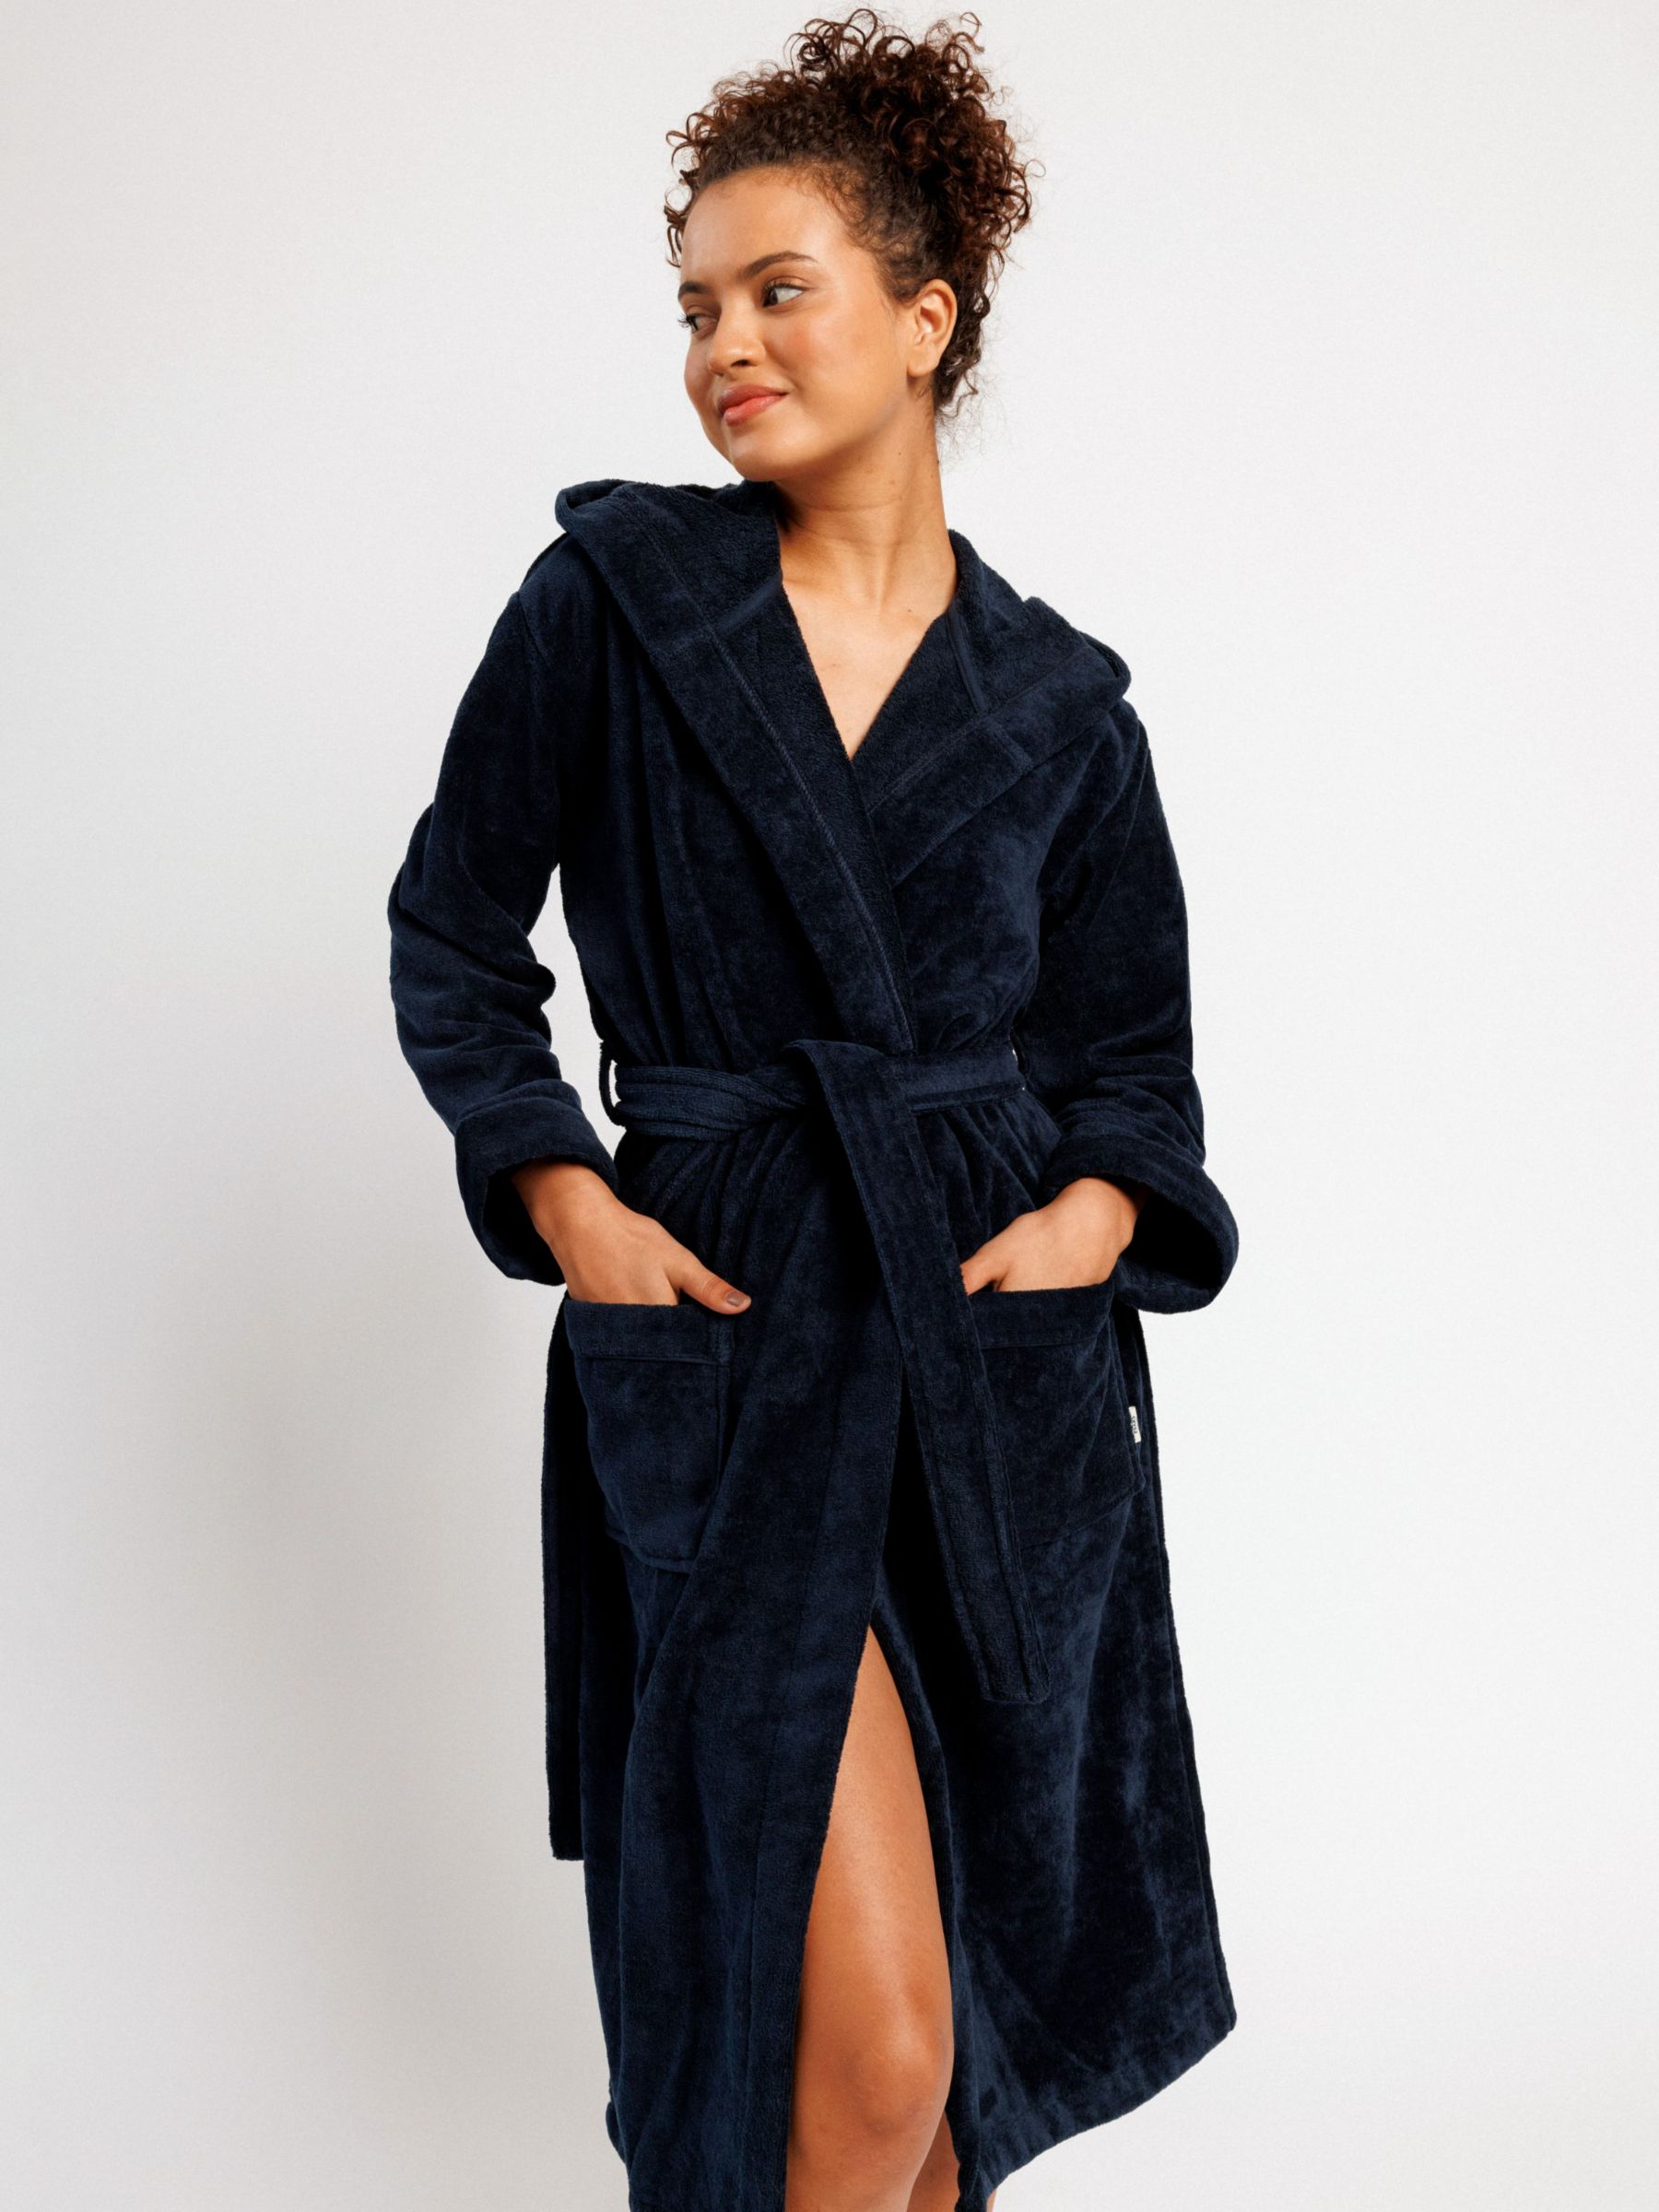 Chelsea Peers Premium Towelling Robe, Navy at John Lewis & Partners